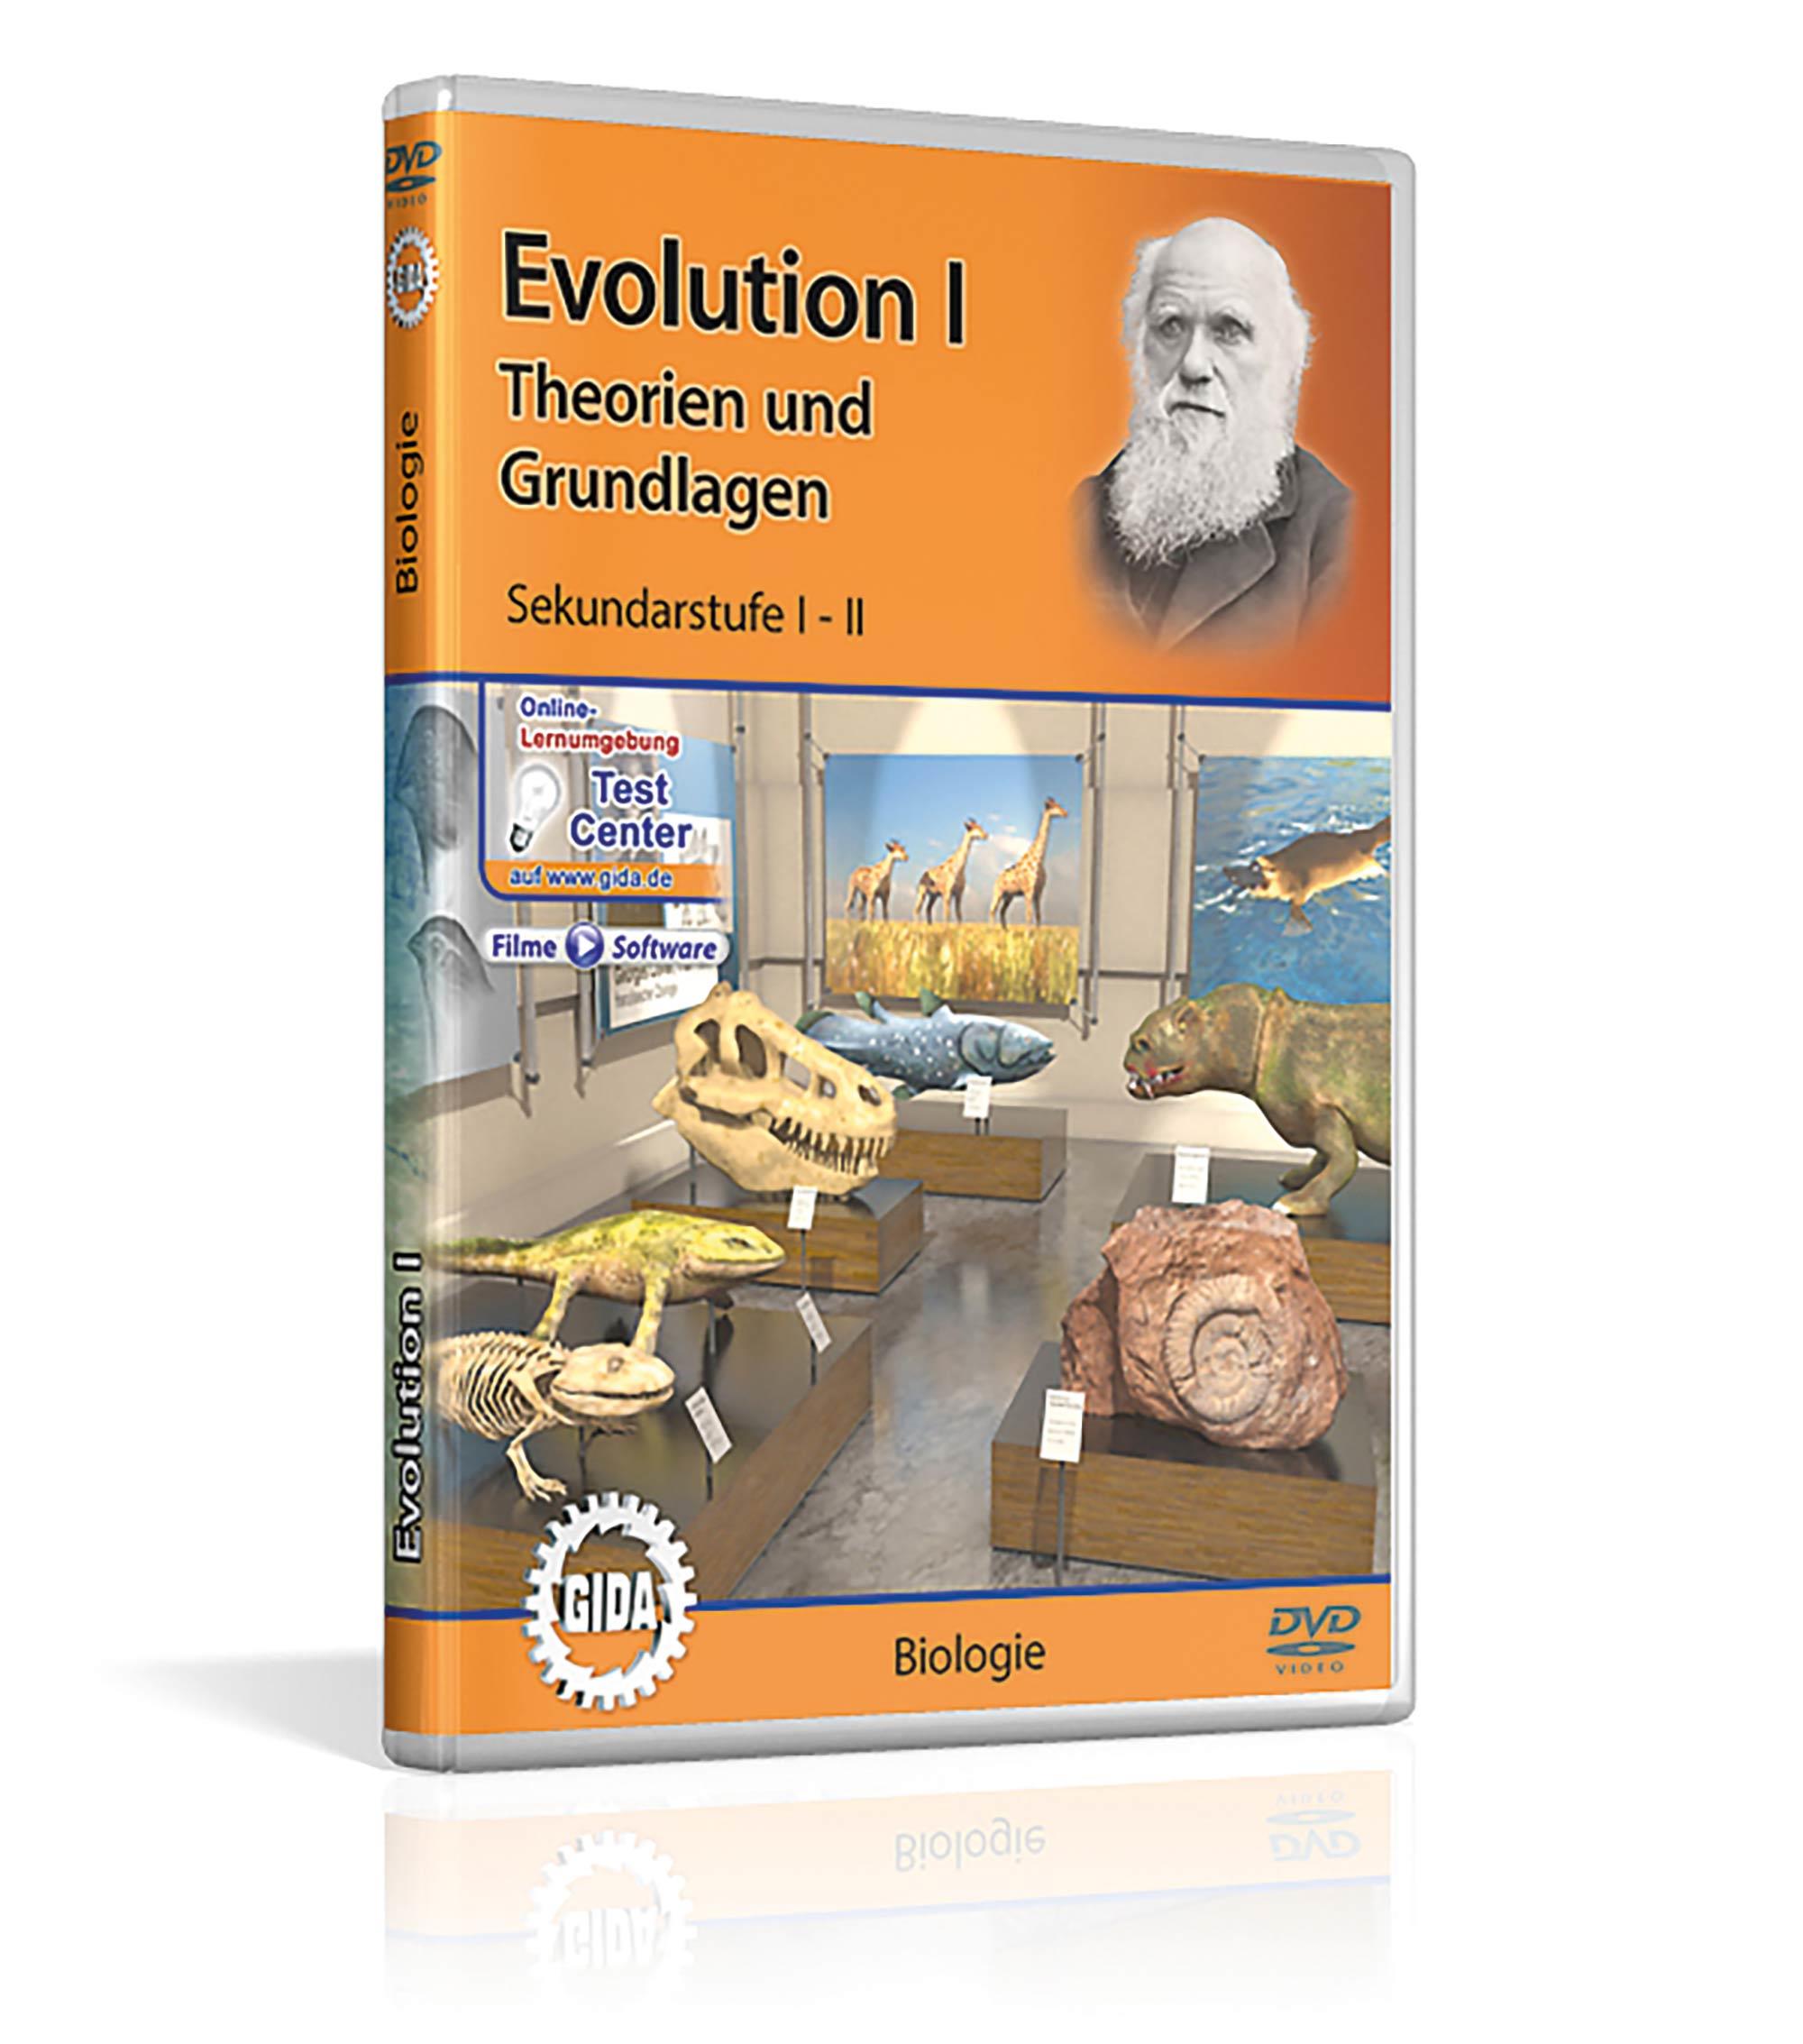 Evolution I: Theorien und Grundlagen